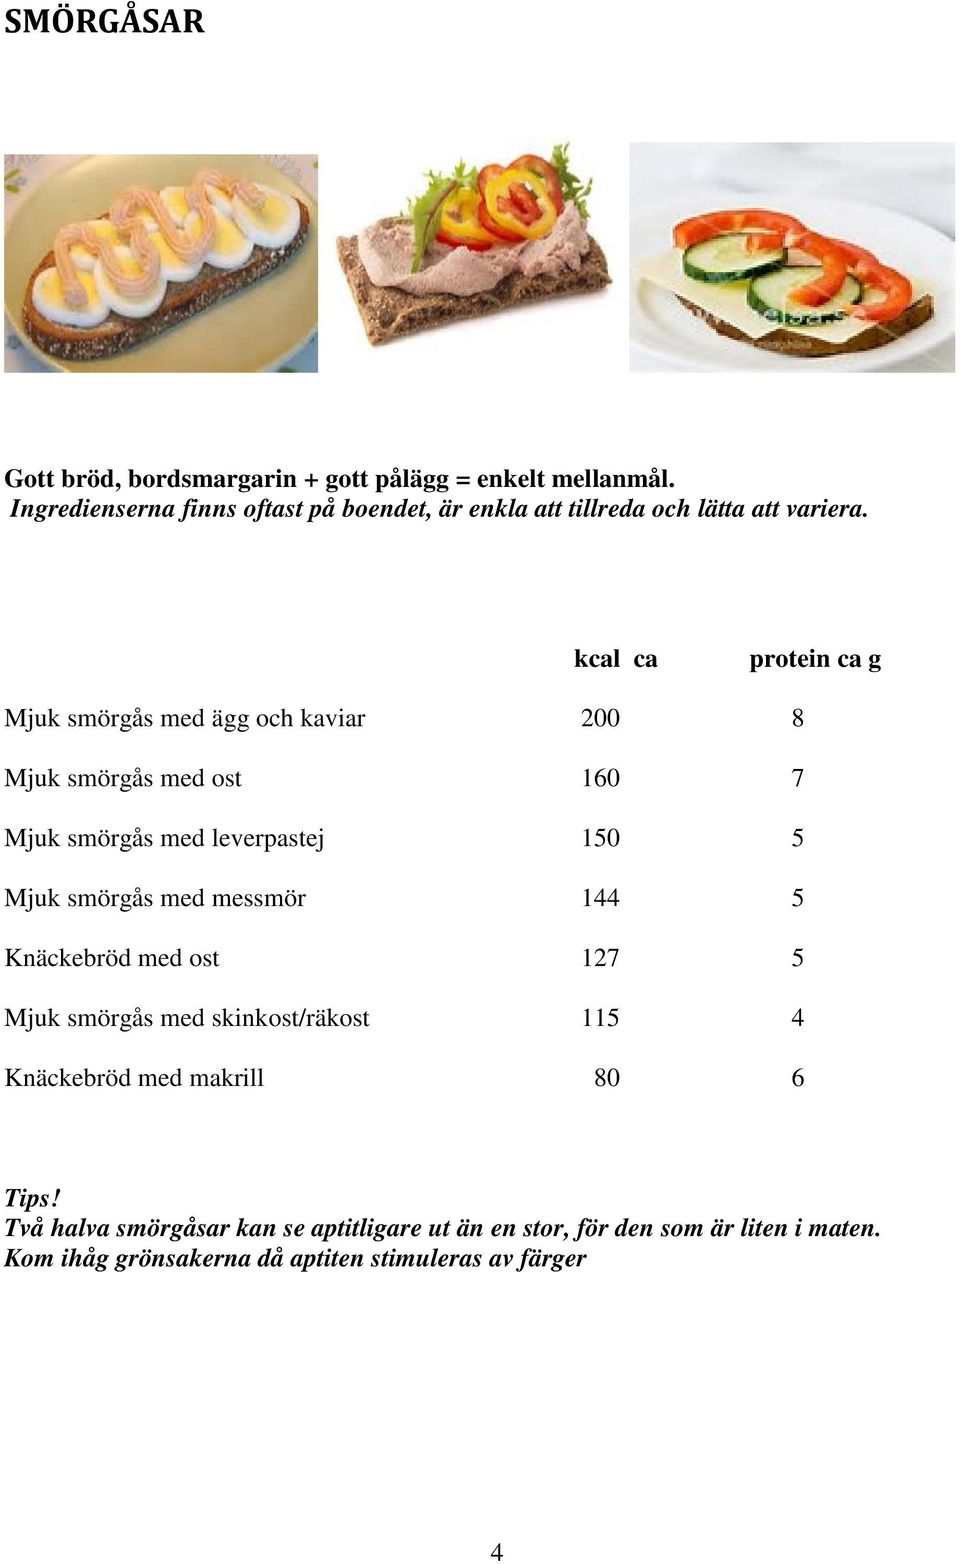 kcal ca protein ca g Mjuk smörgås med ägg och kaviar 200 8 Mjuk smörgås med ost 160 7 Mjuk smörgås med leverpastej 150 5 Mjuk smörgås